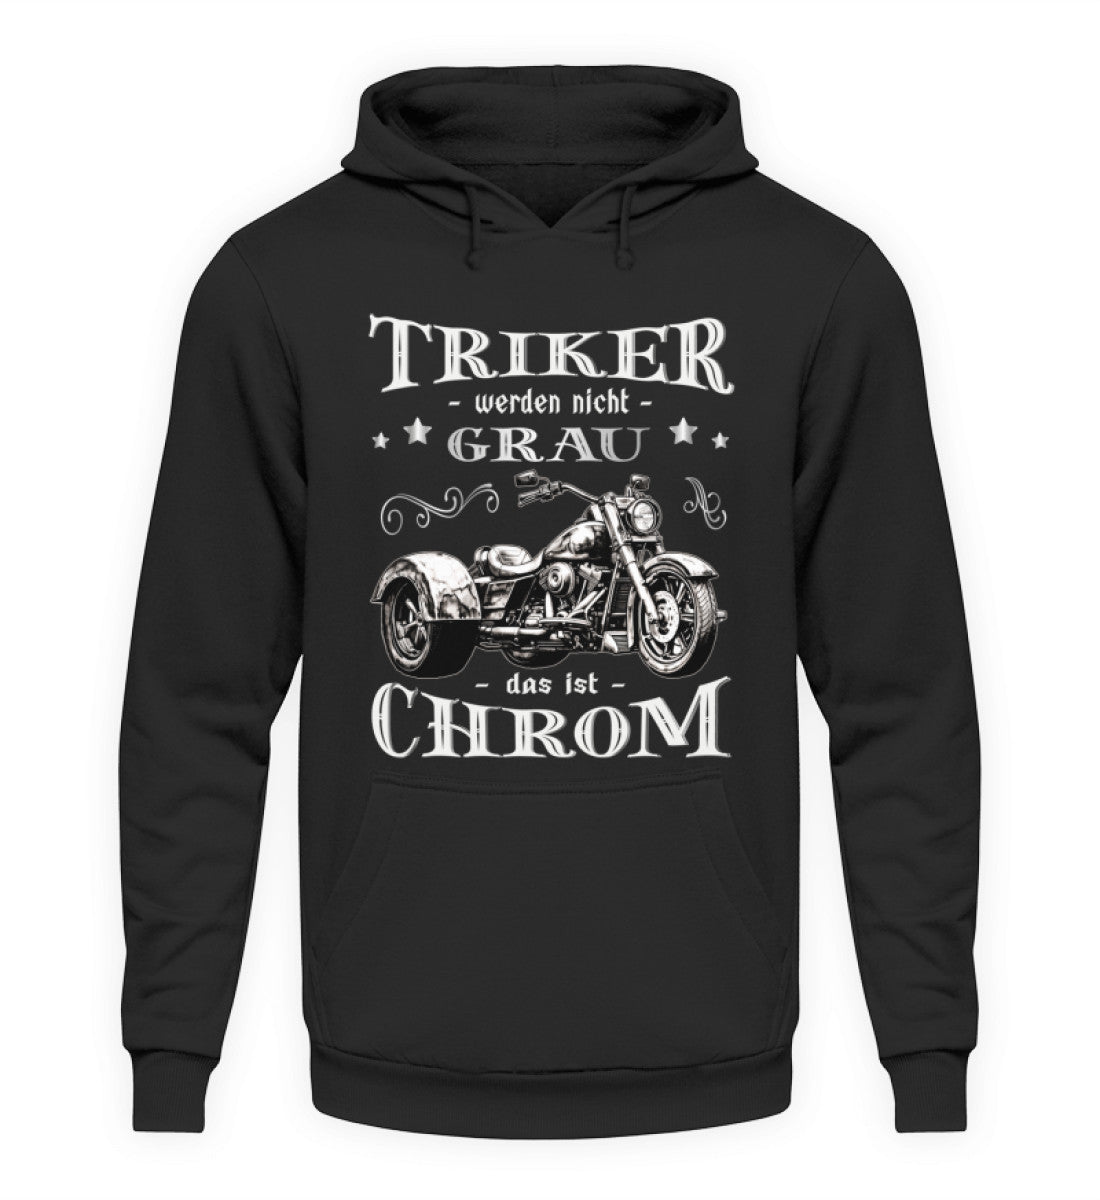 Ein Triker Hoodie für Trikefahrer von Wingbikers mit dem Aufdruck, Triker werden nicht grau - Das ist Chrom, in schwarz.